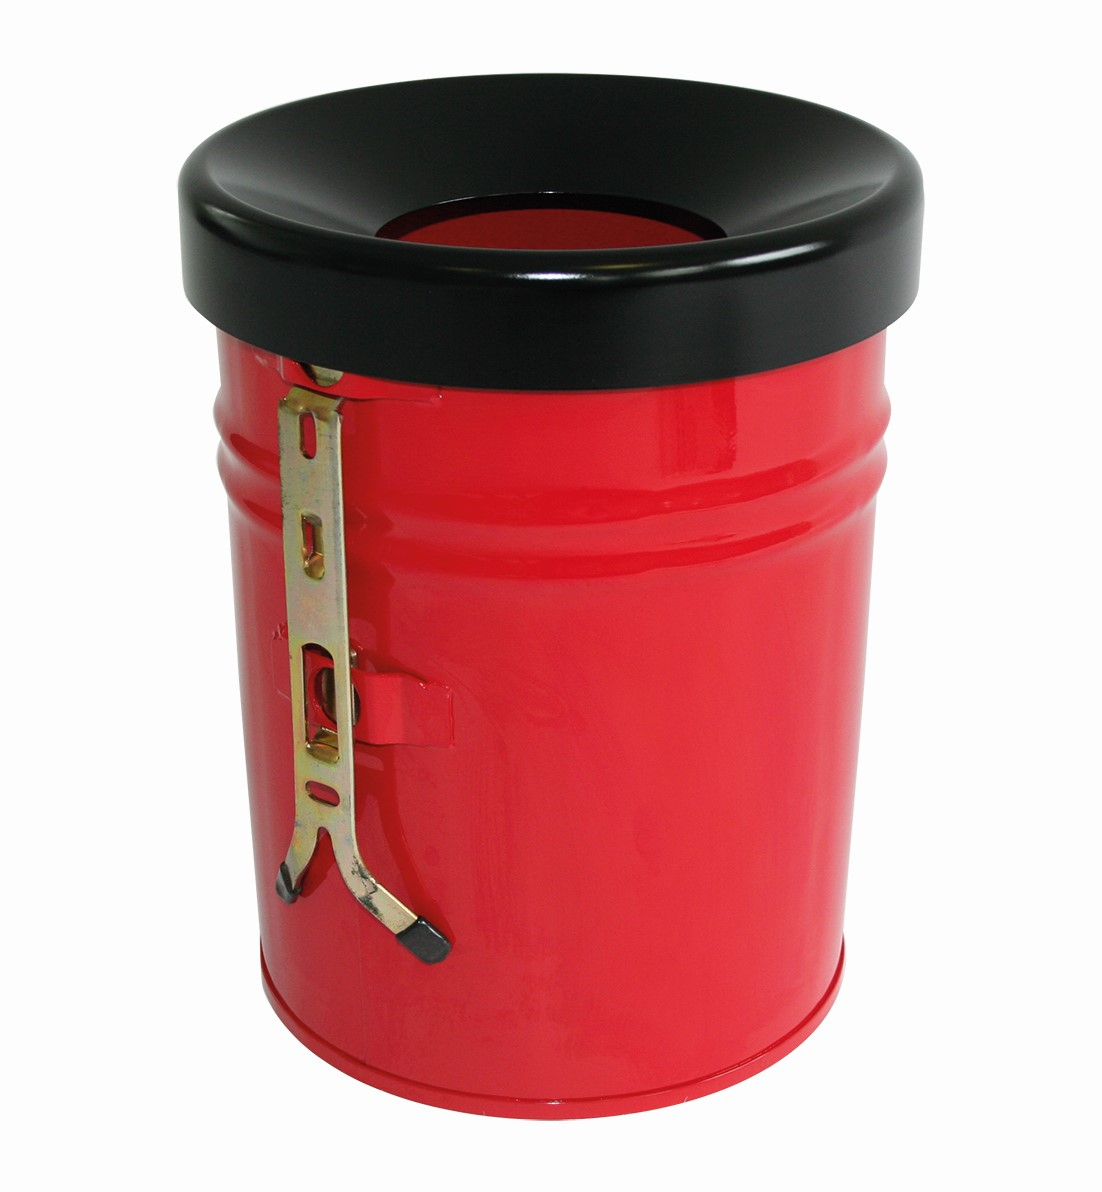 Zelfblussende afvalbak FIRE EX voor wandbevestiging, 16 l, rood, bovendeel zwart  ZOOM